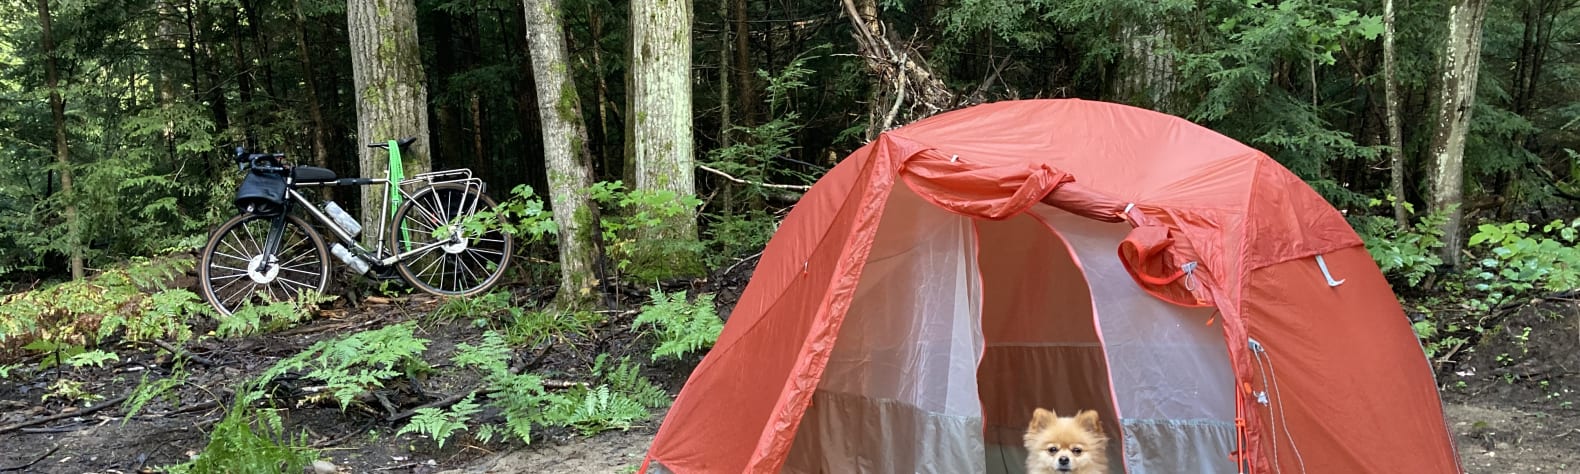 Cedar Creek Camping